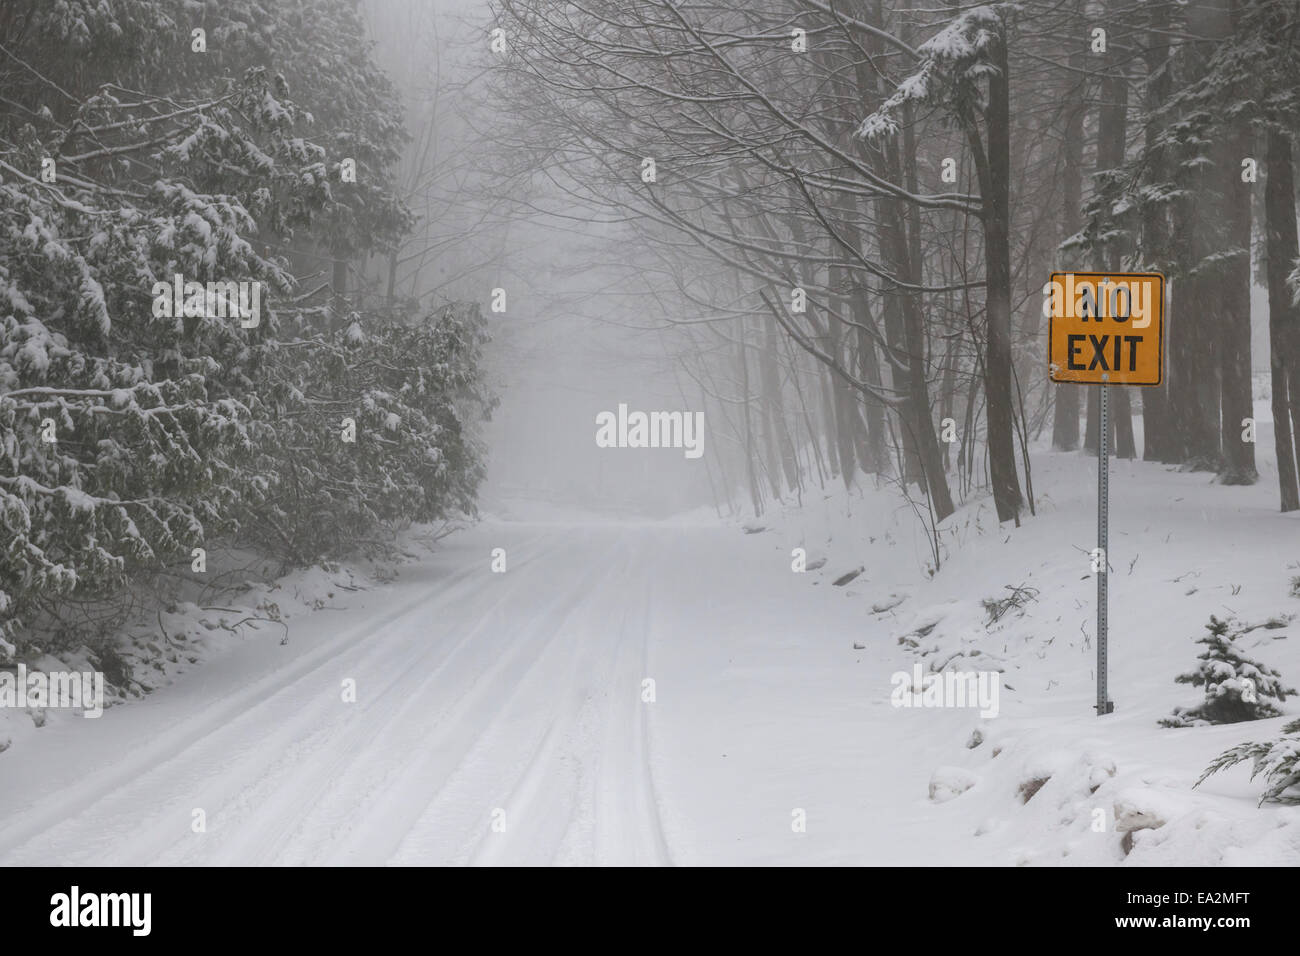 Carretera de invierno y los árboles cubiertos de nieve con Amarillo Sin señal de salida Foto de stock